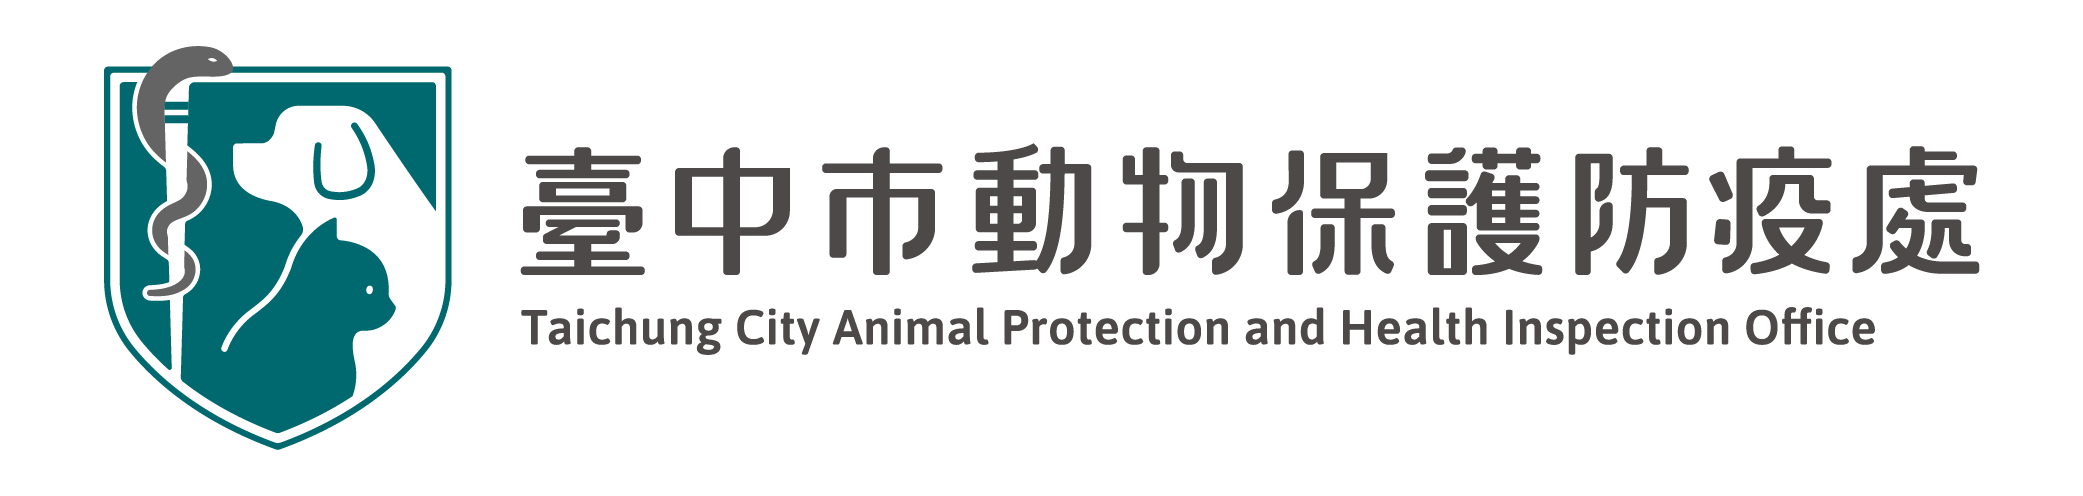 臺中市動物保護防疫處